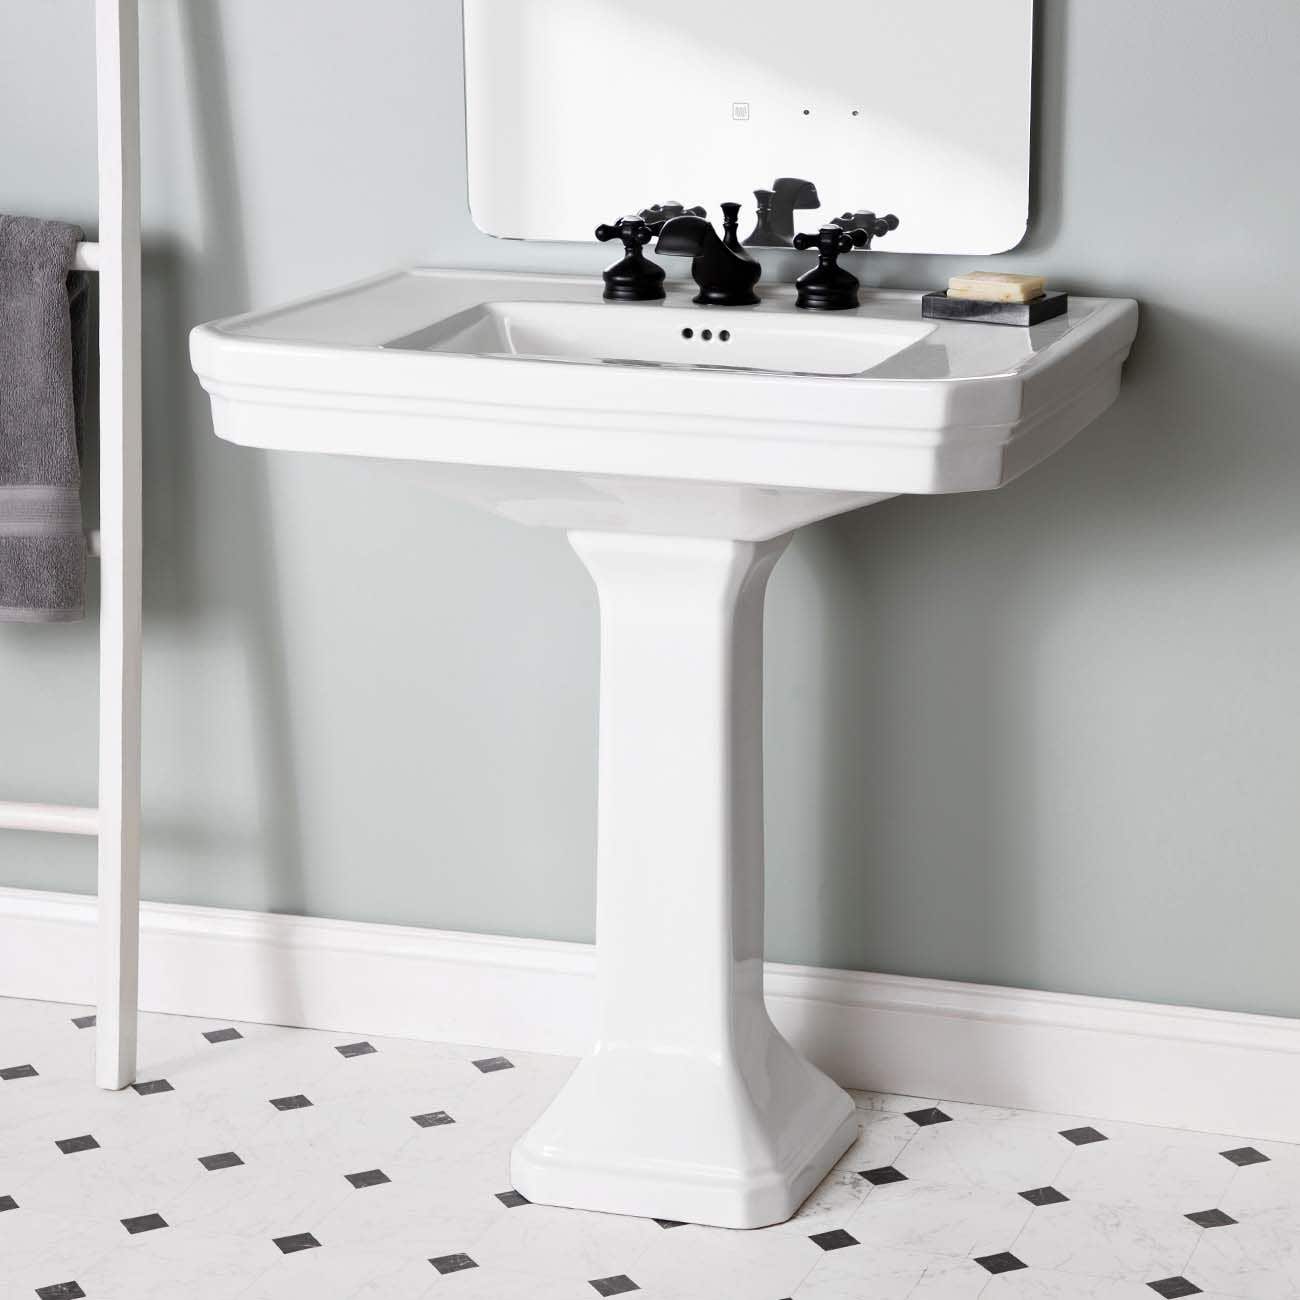 32 inch pedestal sink